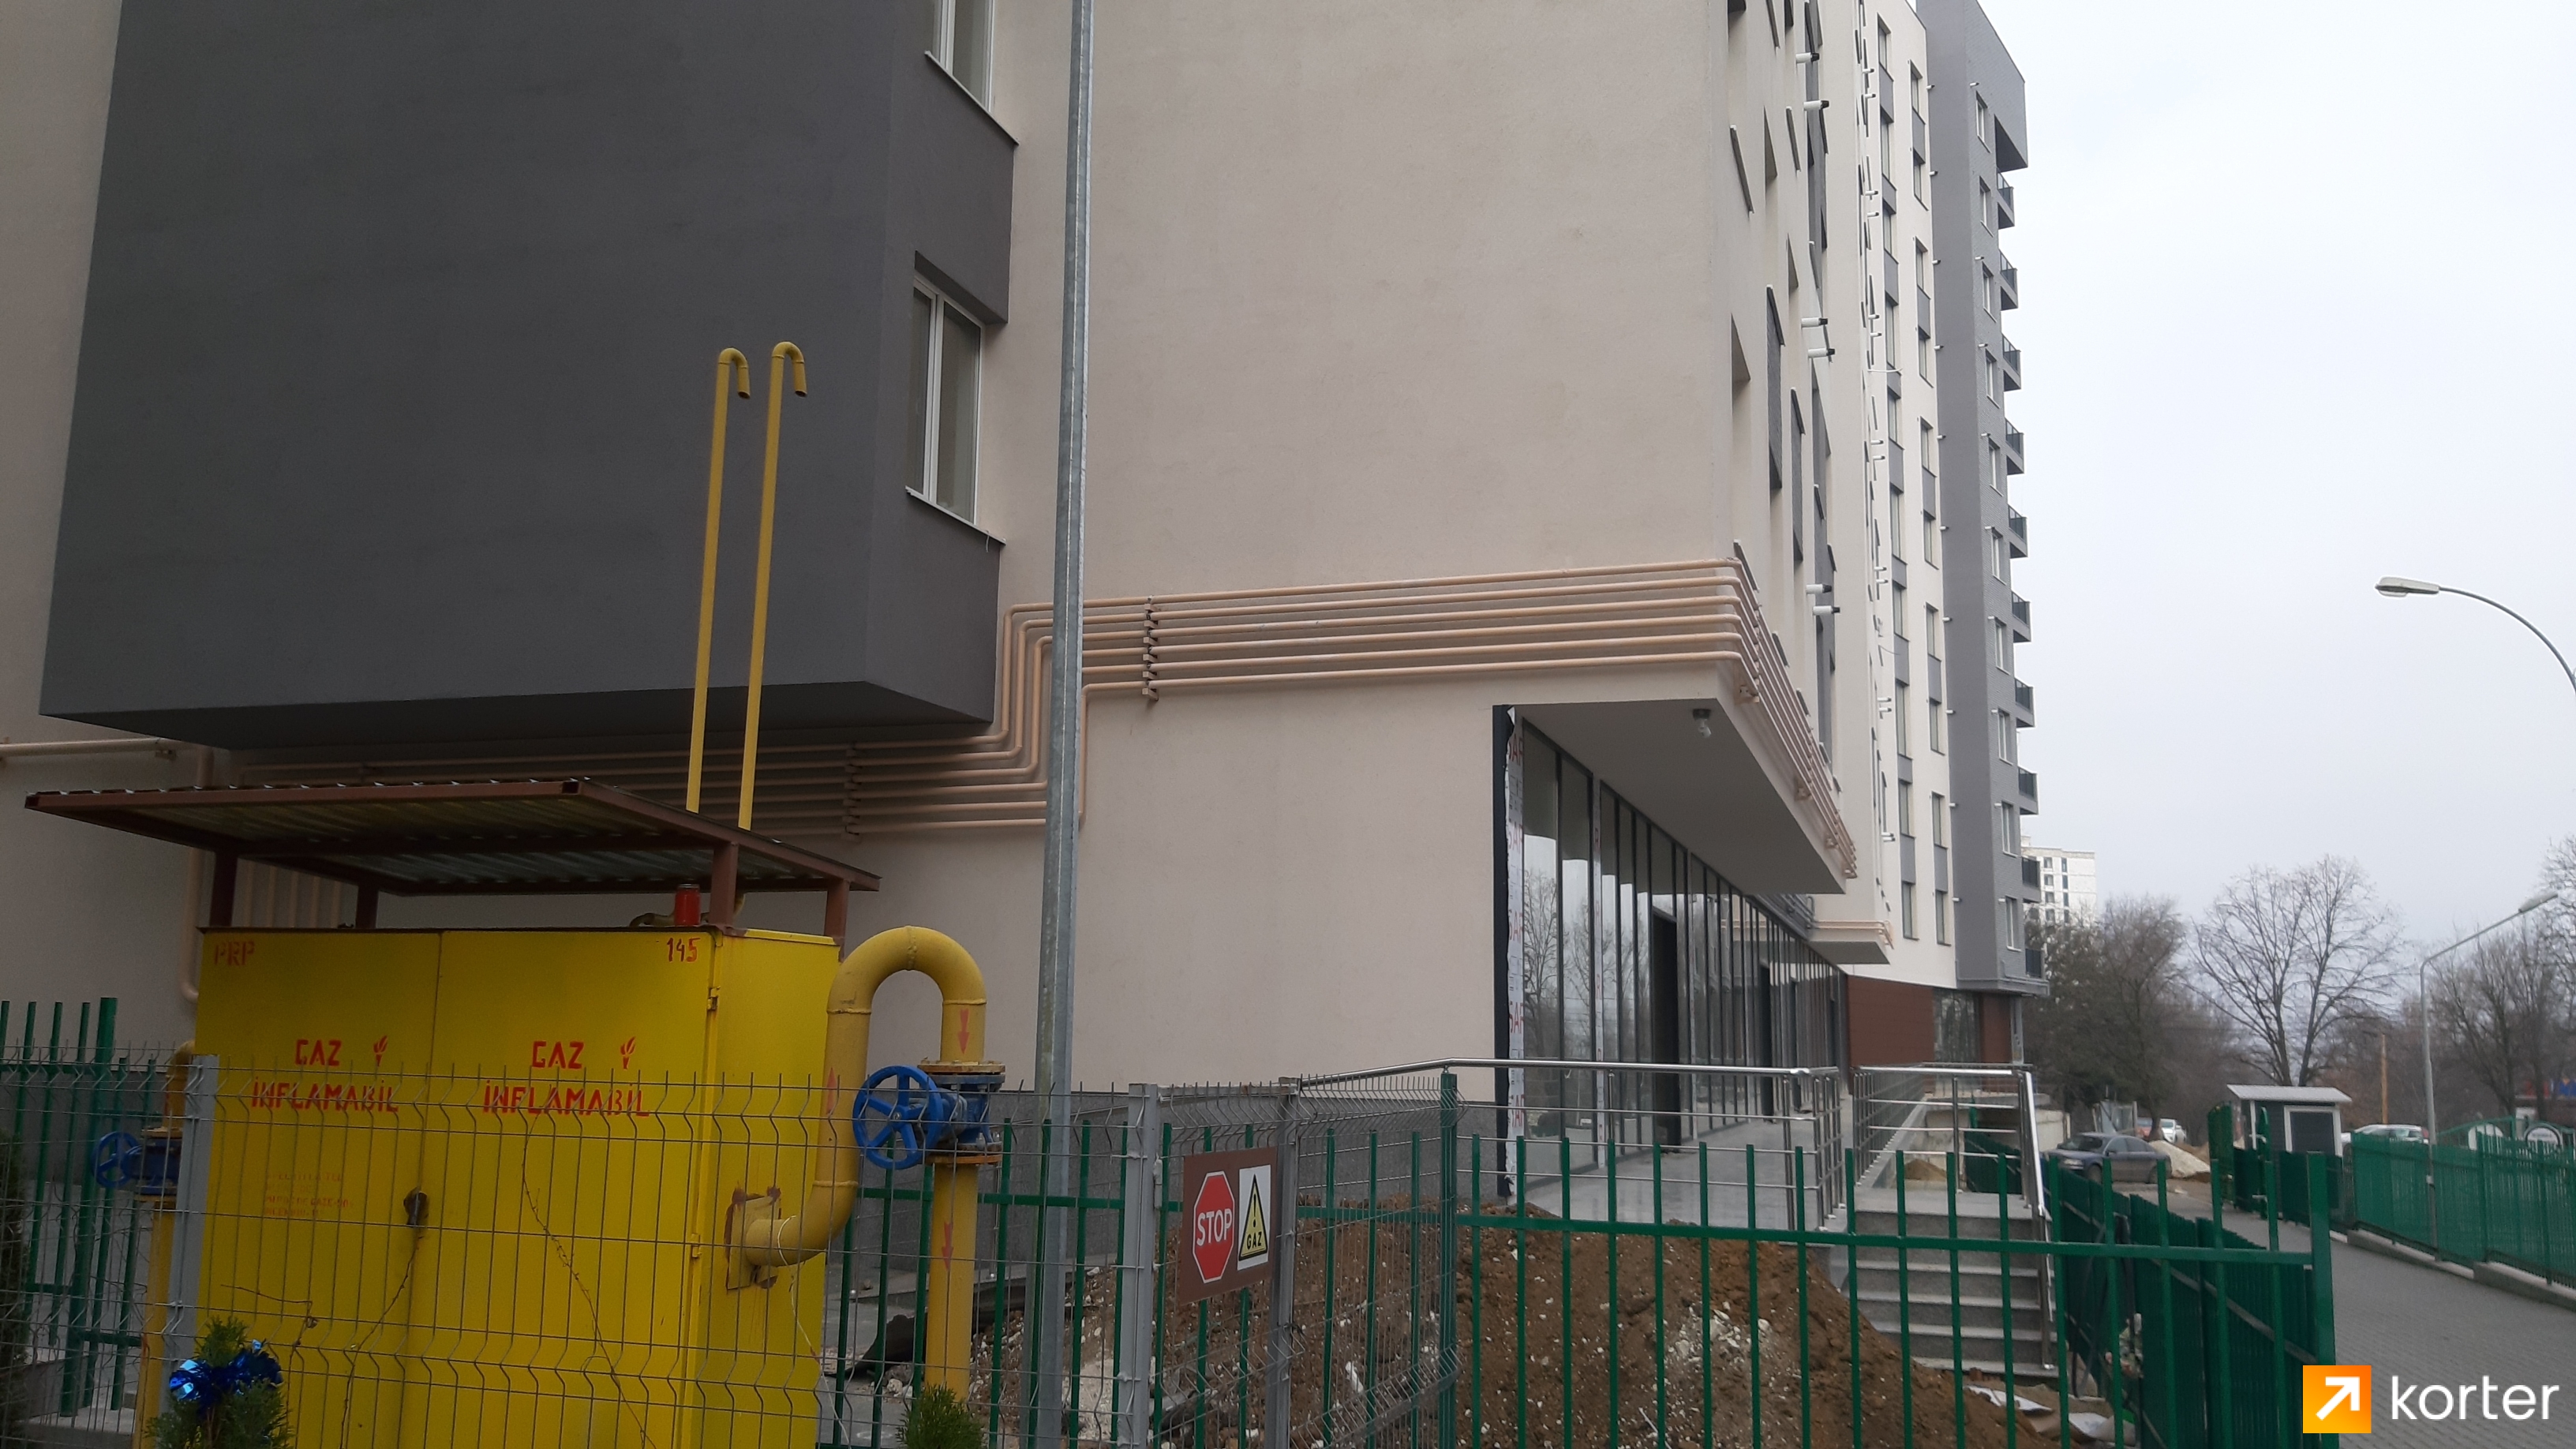 Evoluția construcției Complexului Complex Sky House Grenoble - Punct 5, Decembrie 2019